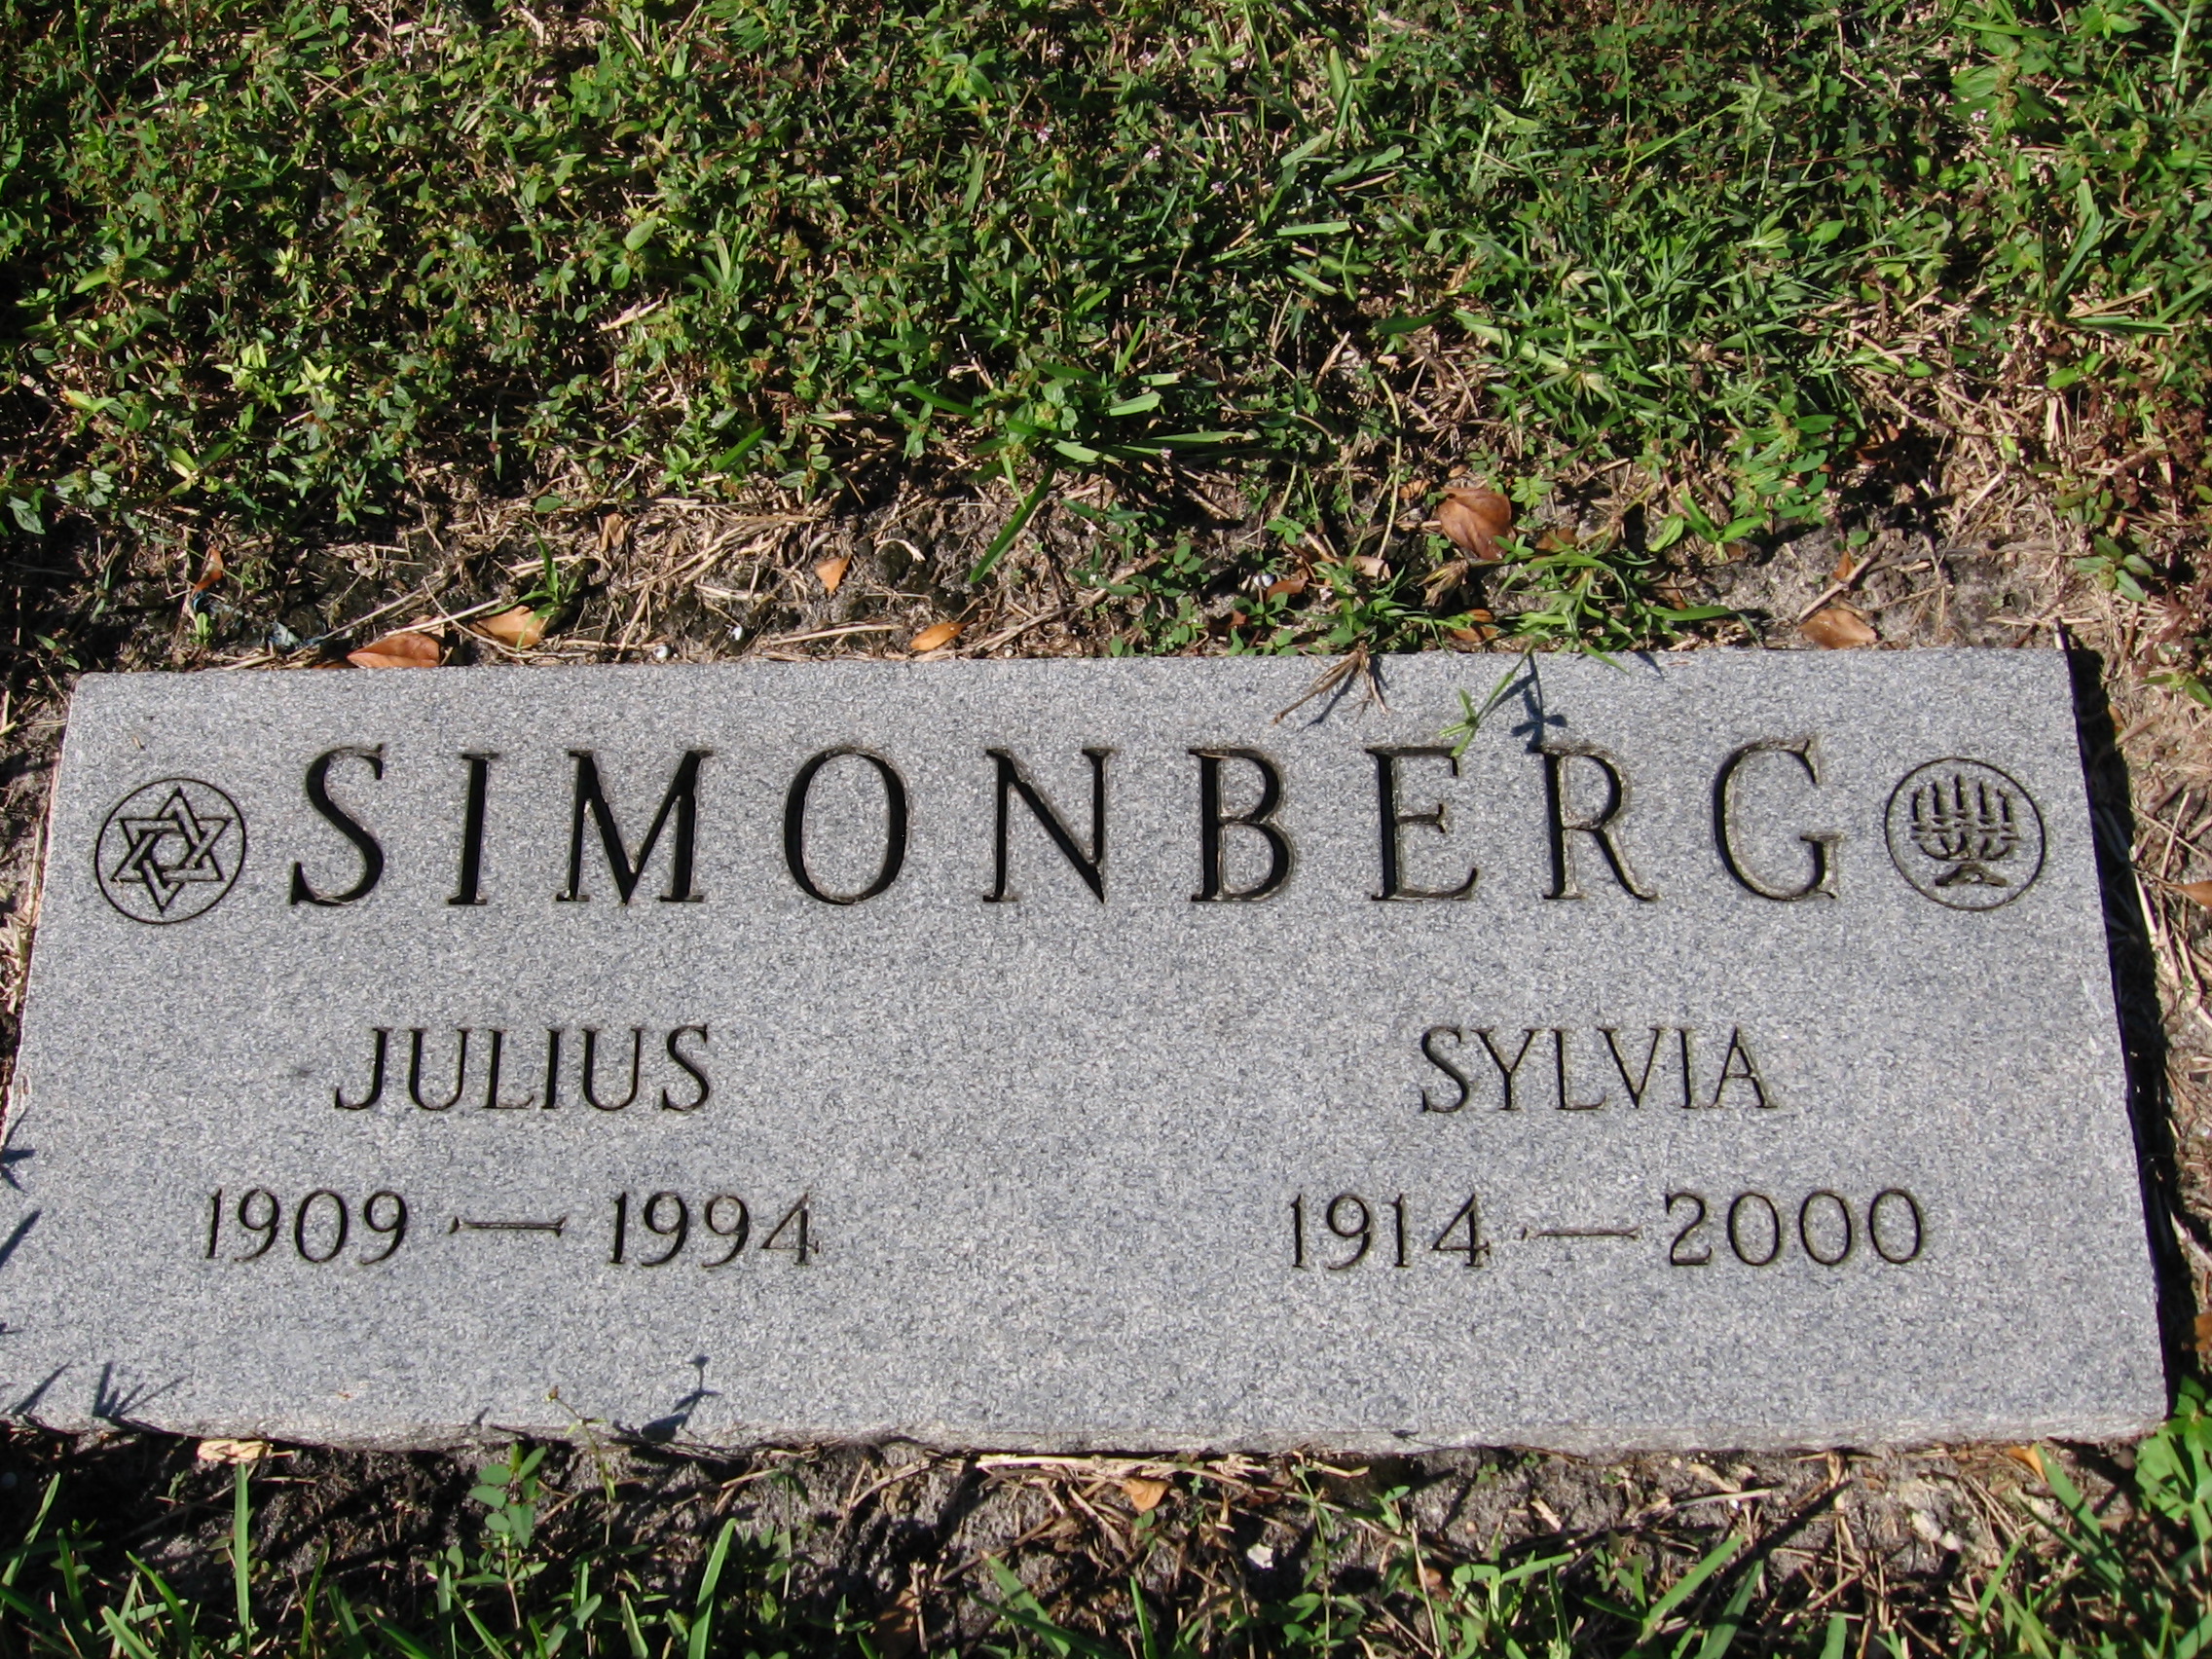 Julius Simonberg